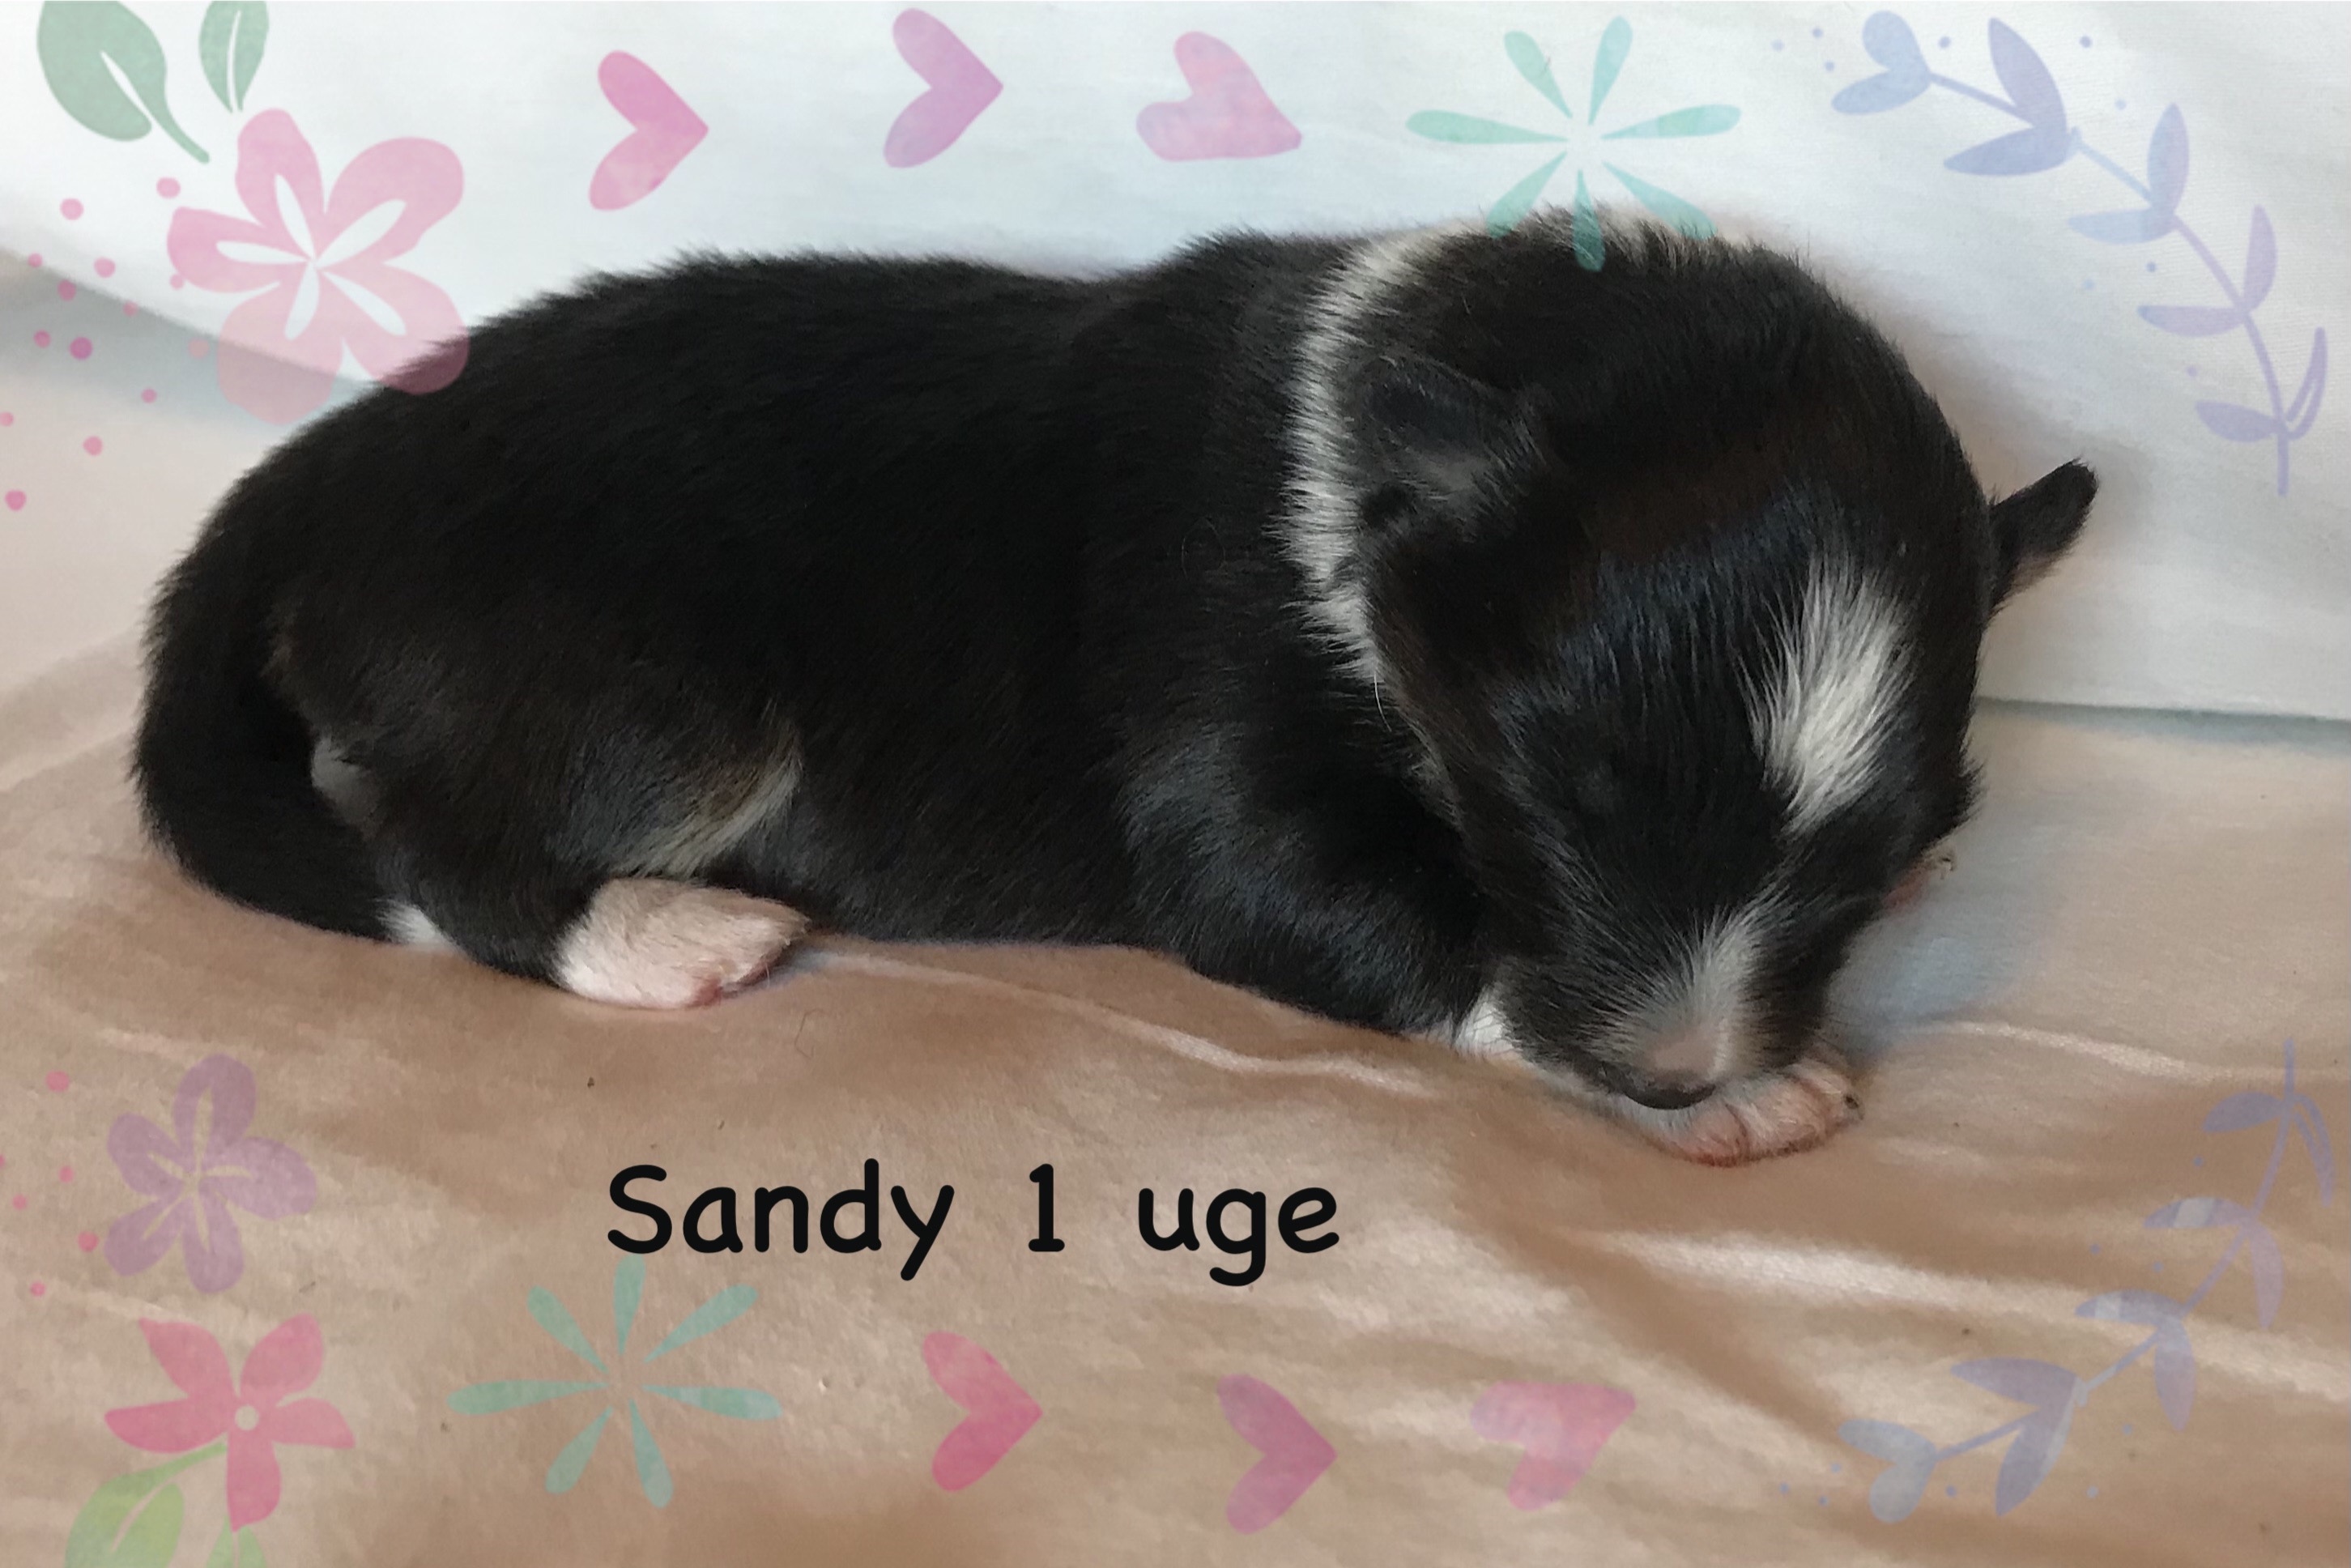 Sandy har fået sit navn fordi hendes aftegninger ligner et timeglas.